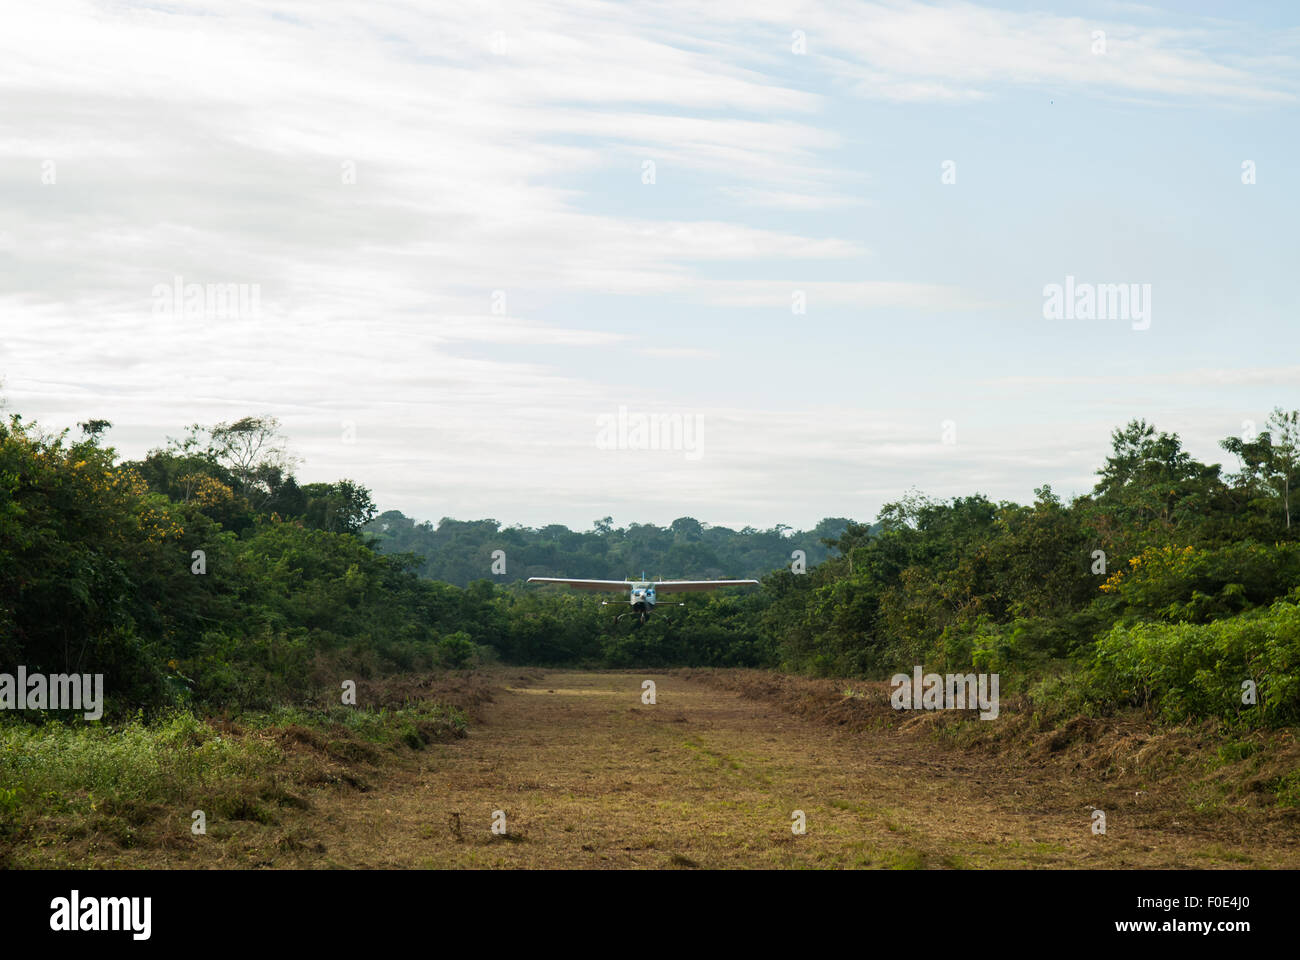 Aldeia Baú, Para State, Brazil. Amazon landing strip. Stock Photo